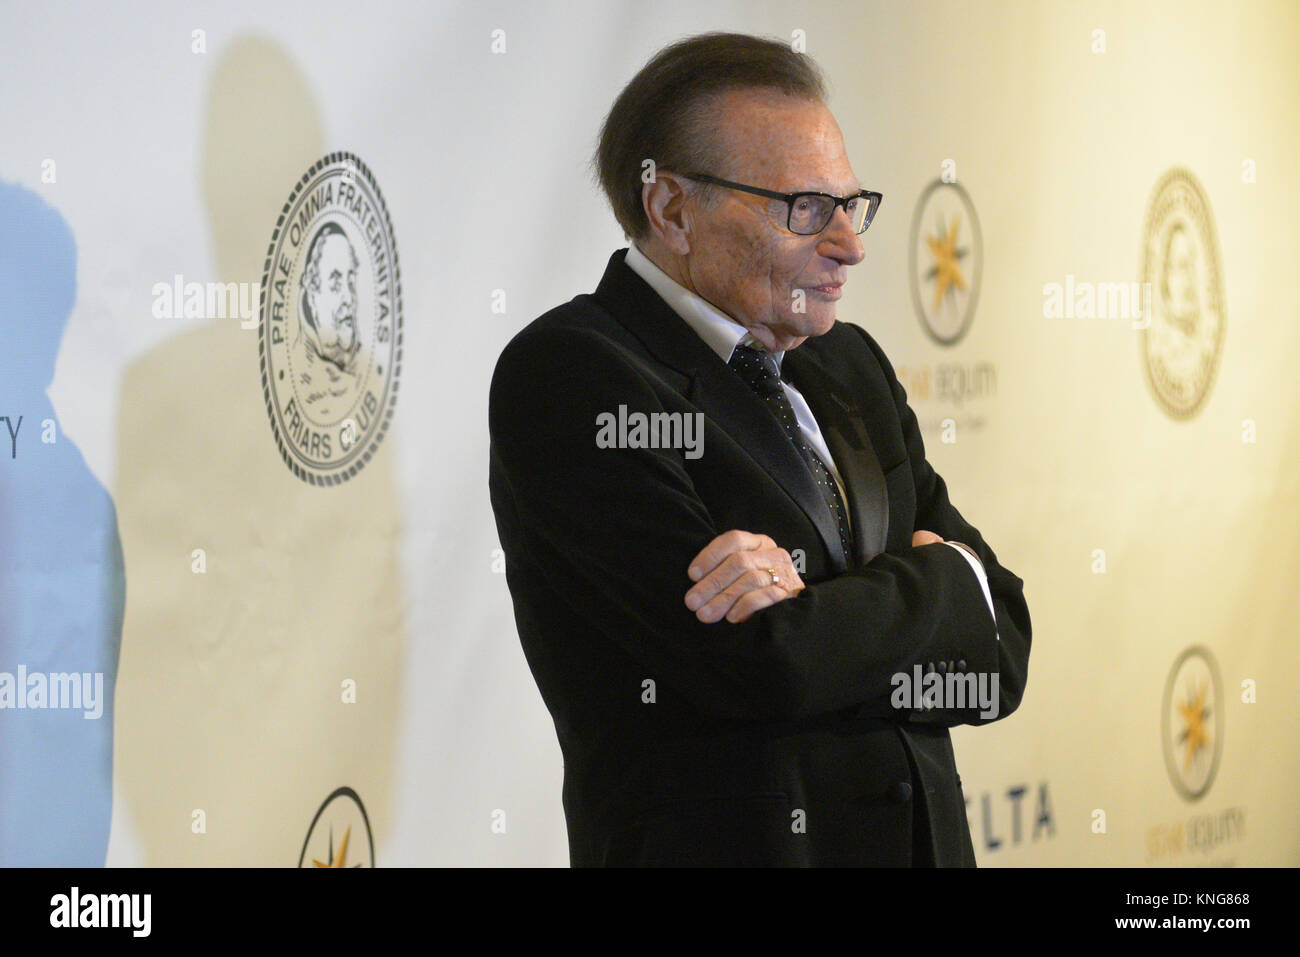 Larry King occupe les Frères Tony Bennett Club avec l'icône Animation award à l'hôtel Sheraton de New York le 20 juin 2016 à New York. Banque D'Images